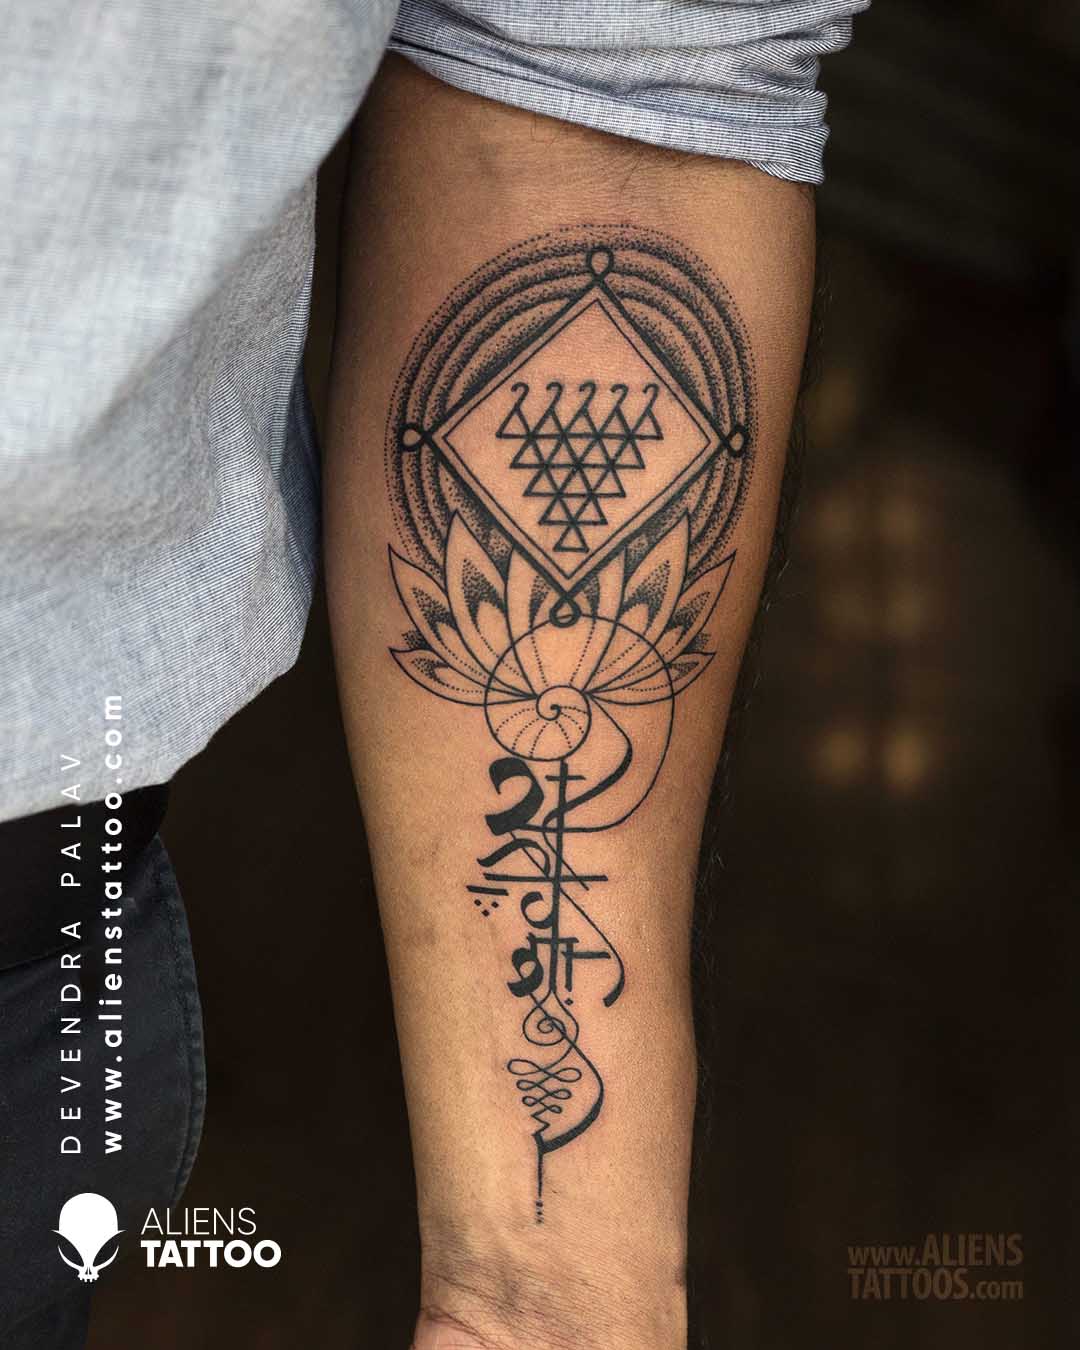 I.L.Tattoo Studio... - I.L.Tattoo Studio Kohima Nagaland | Facebook